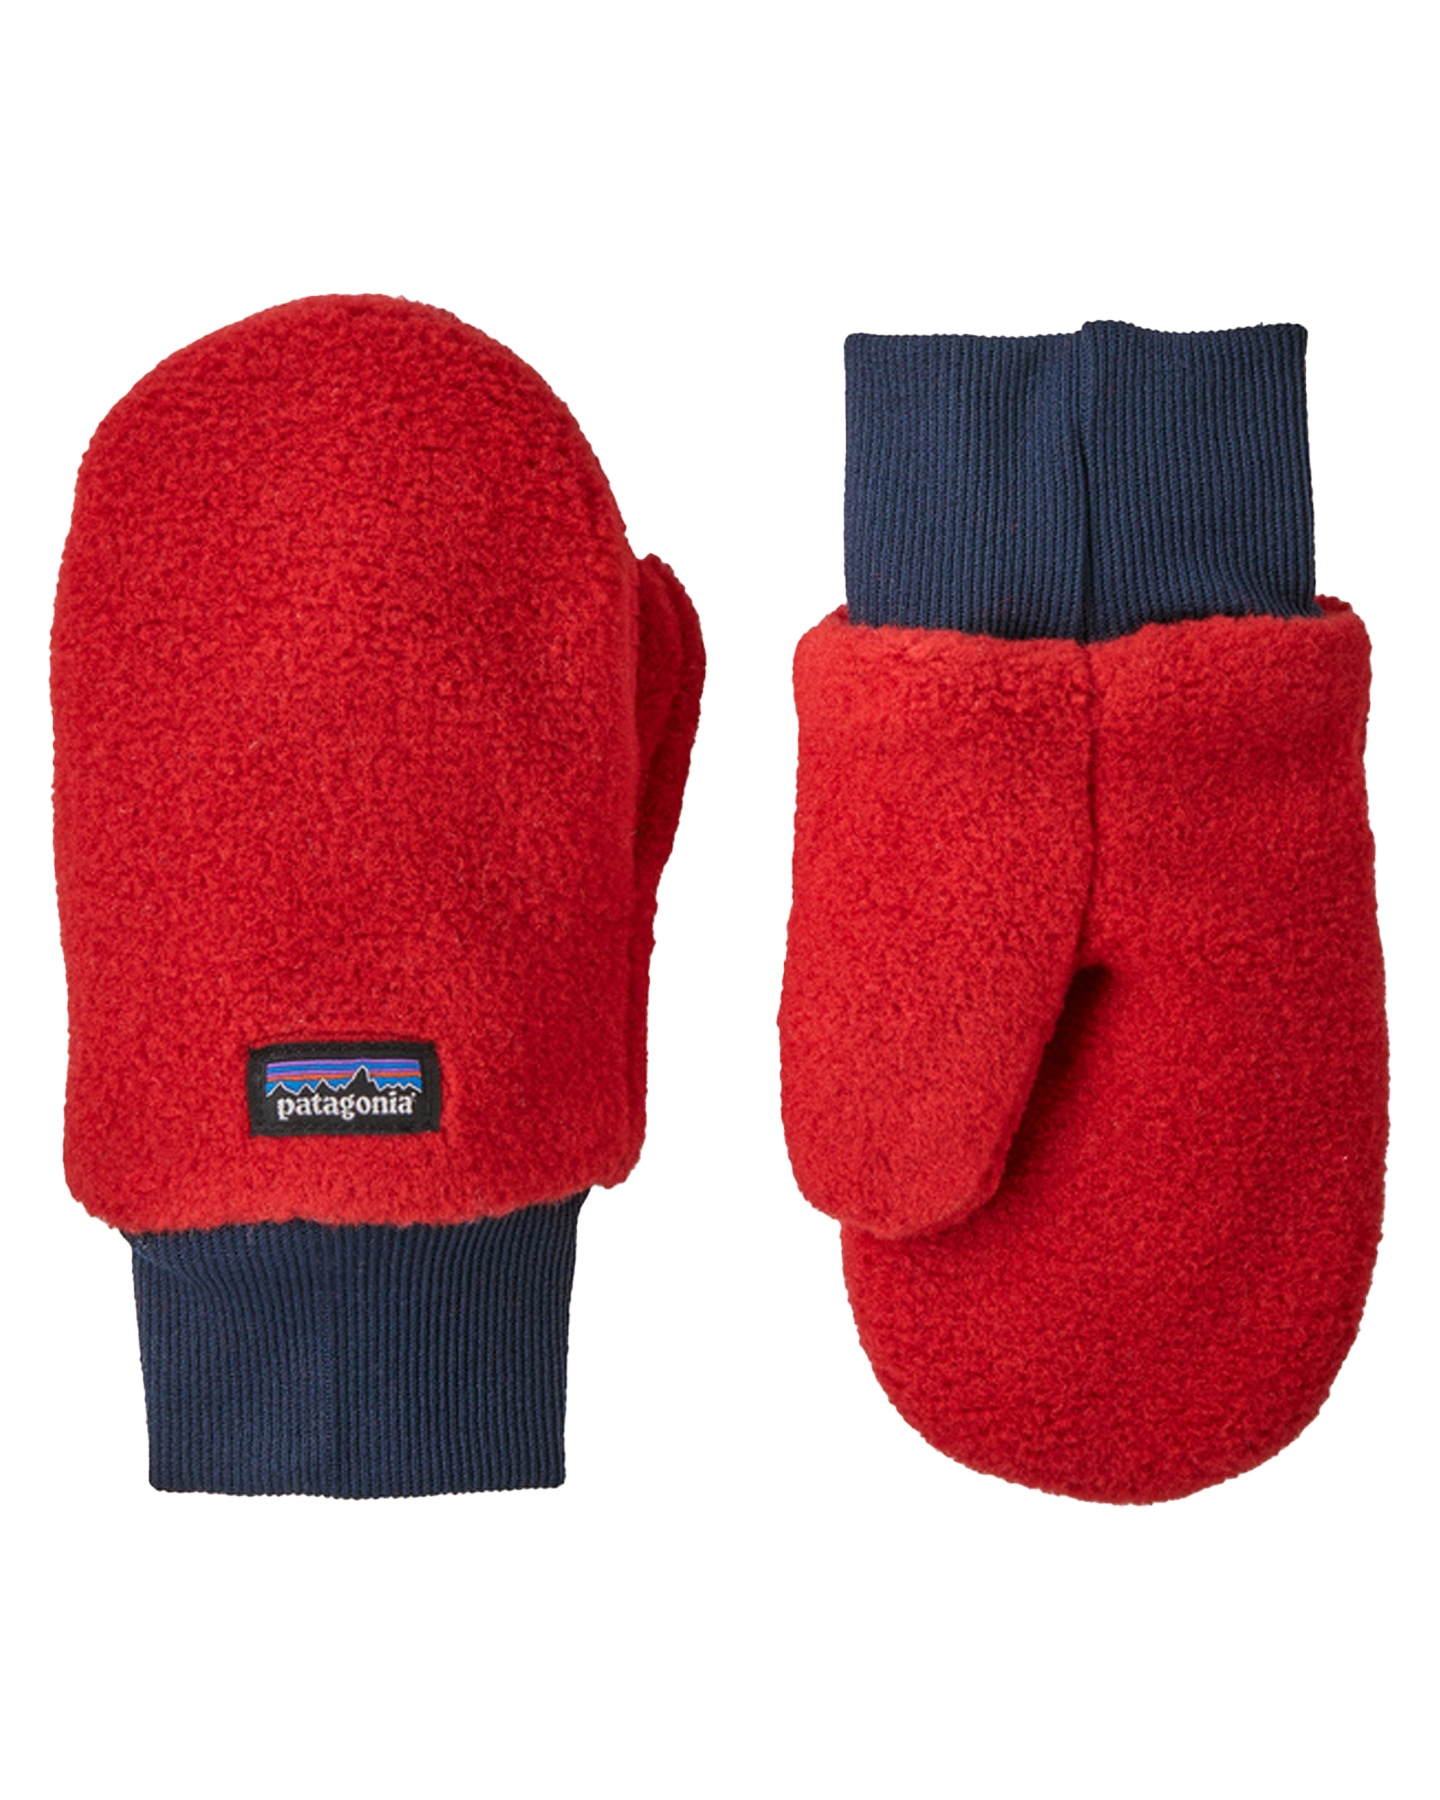 Patagonia Pita Pocket Infant's Mittens - Touring Red Kids' Snow Gloves & Mittens - Trojan Wake Ski Snow